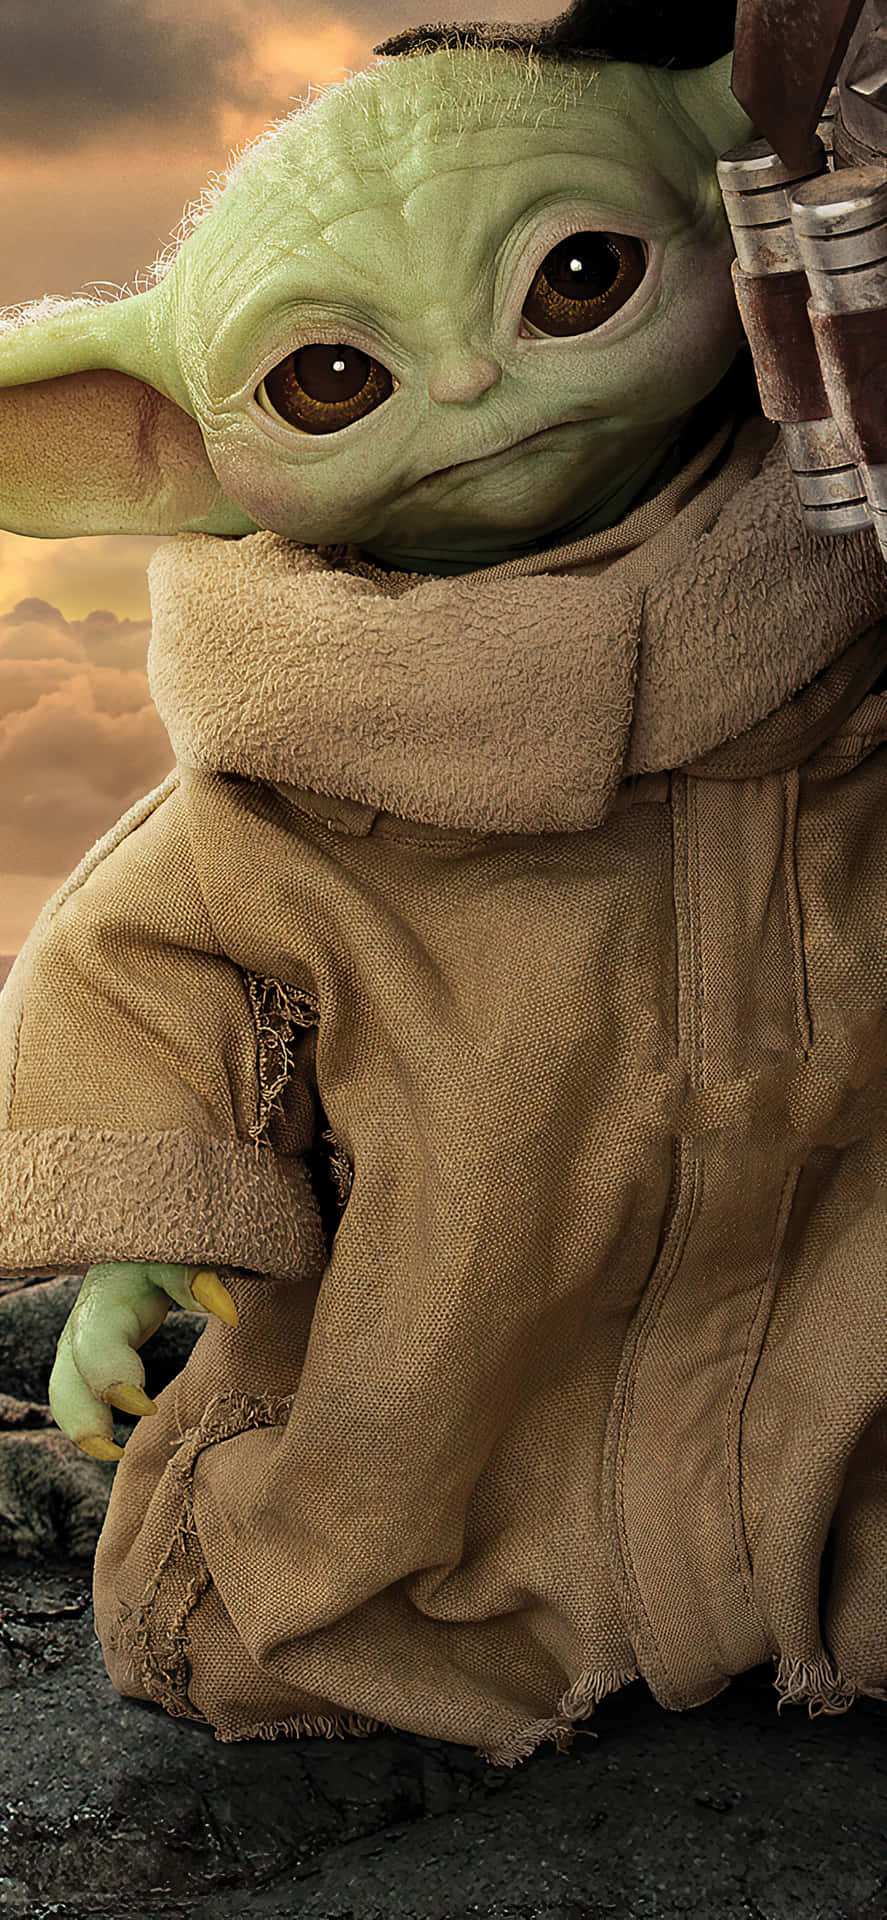 Säghej Till Det Senaste Tillskottet Till Din Telefon - Baby Yoda! Wallpaper